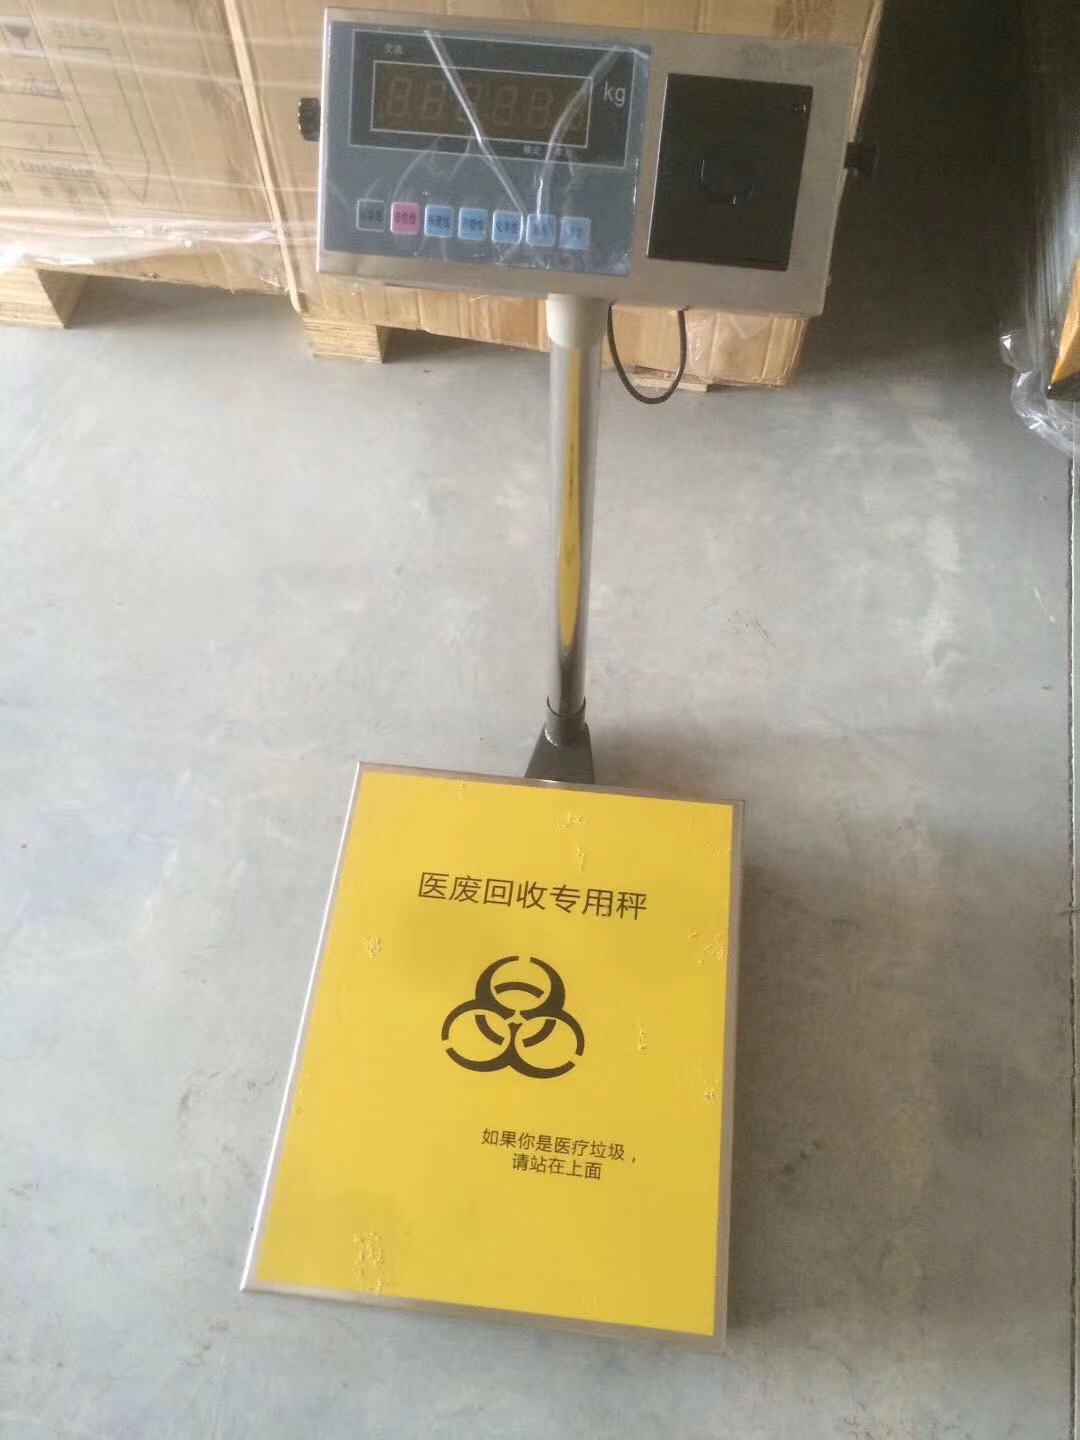 上海50公斤垃圾称重电子秤模块可二次开发